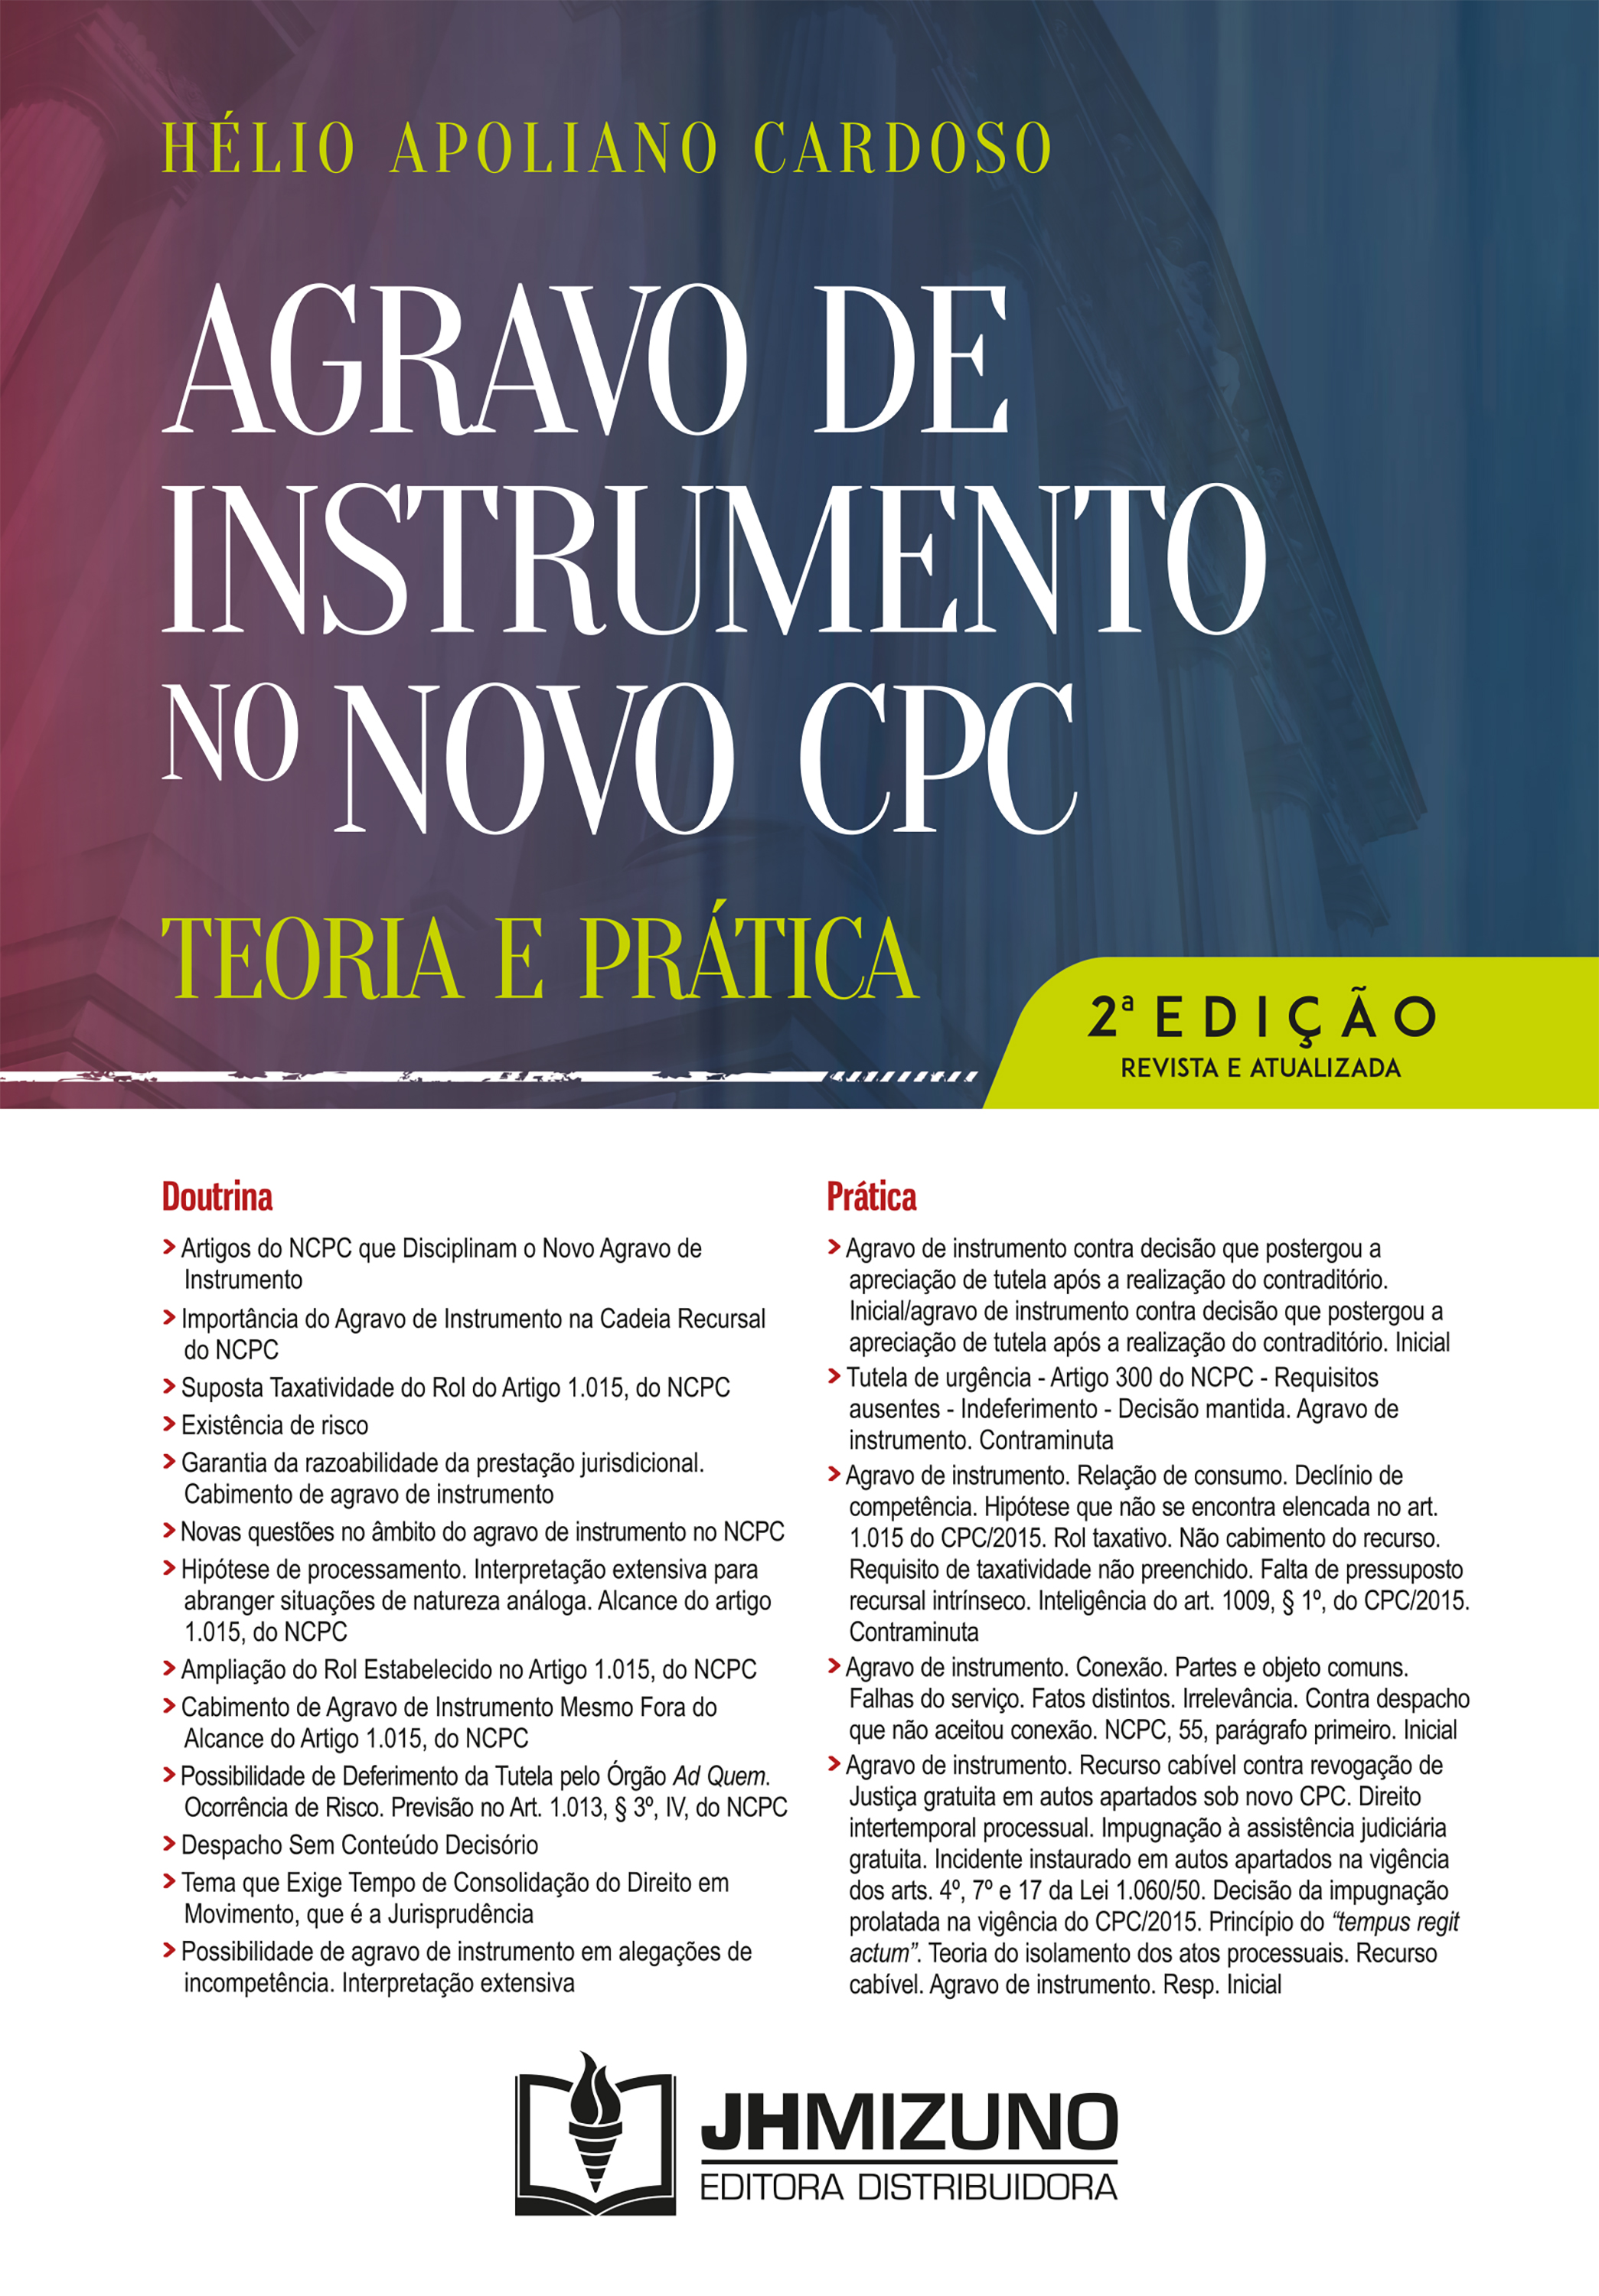 Agravo de Instrumento no Novo CPC - 2ª edição